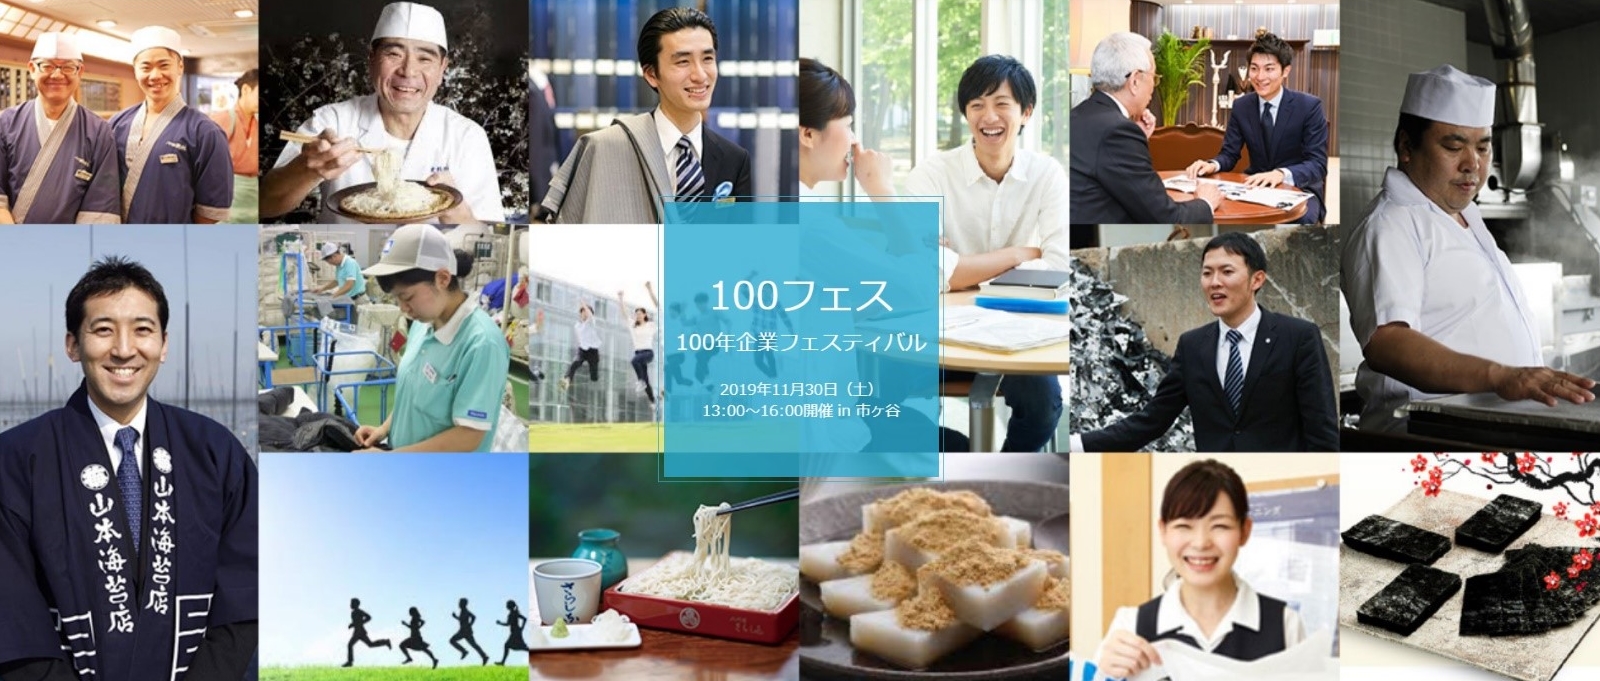 老舗企業が結束し 日本の伝統を次世代につなげるためのイベント 100 年企業フェスティバル を11月30 日 土 13 00より開催いたします 株式 会社船橋屋のプレスリリース